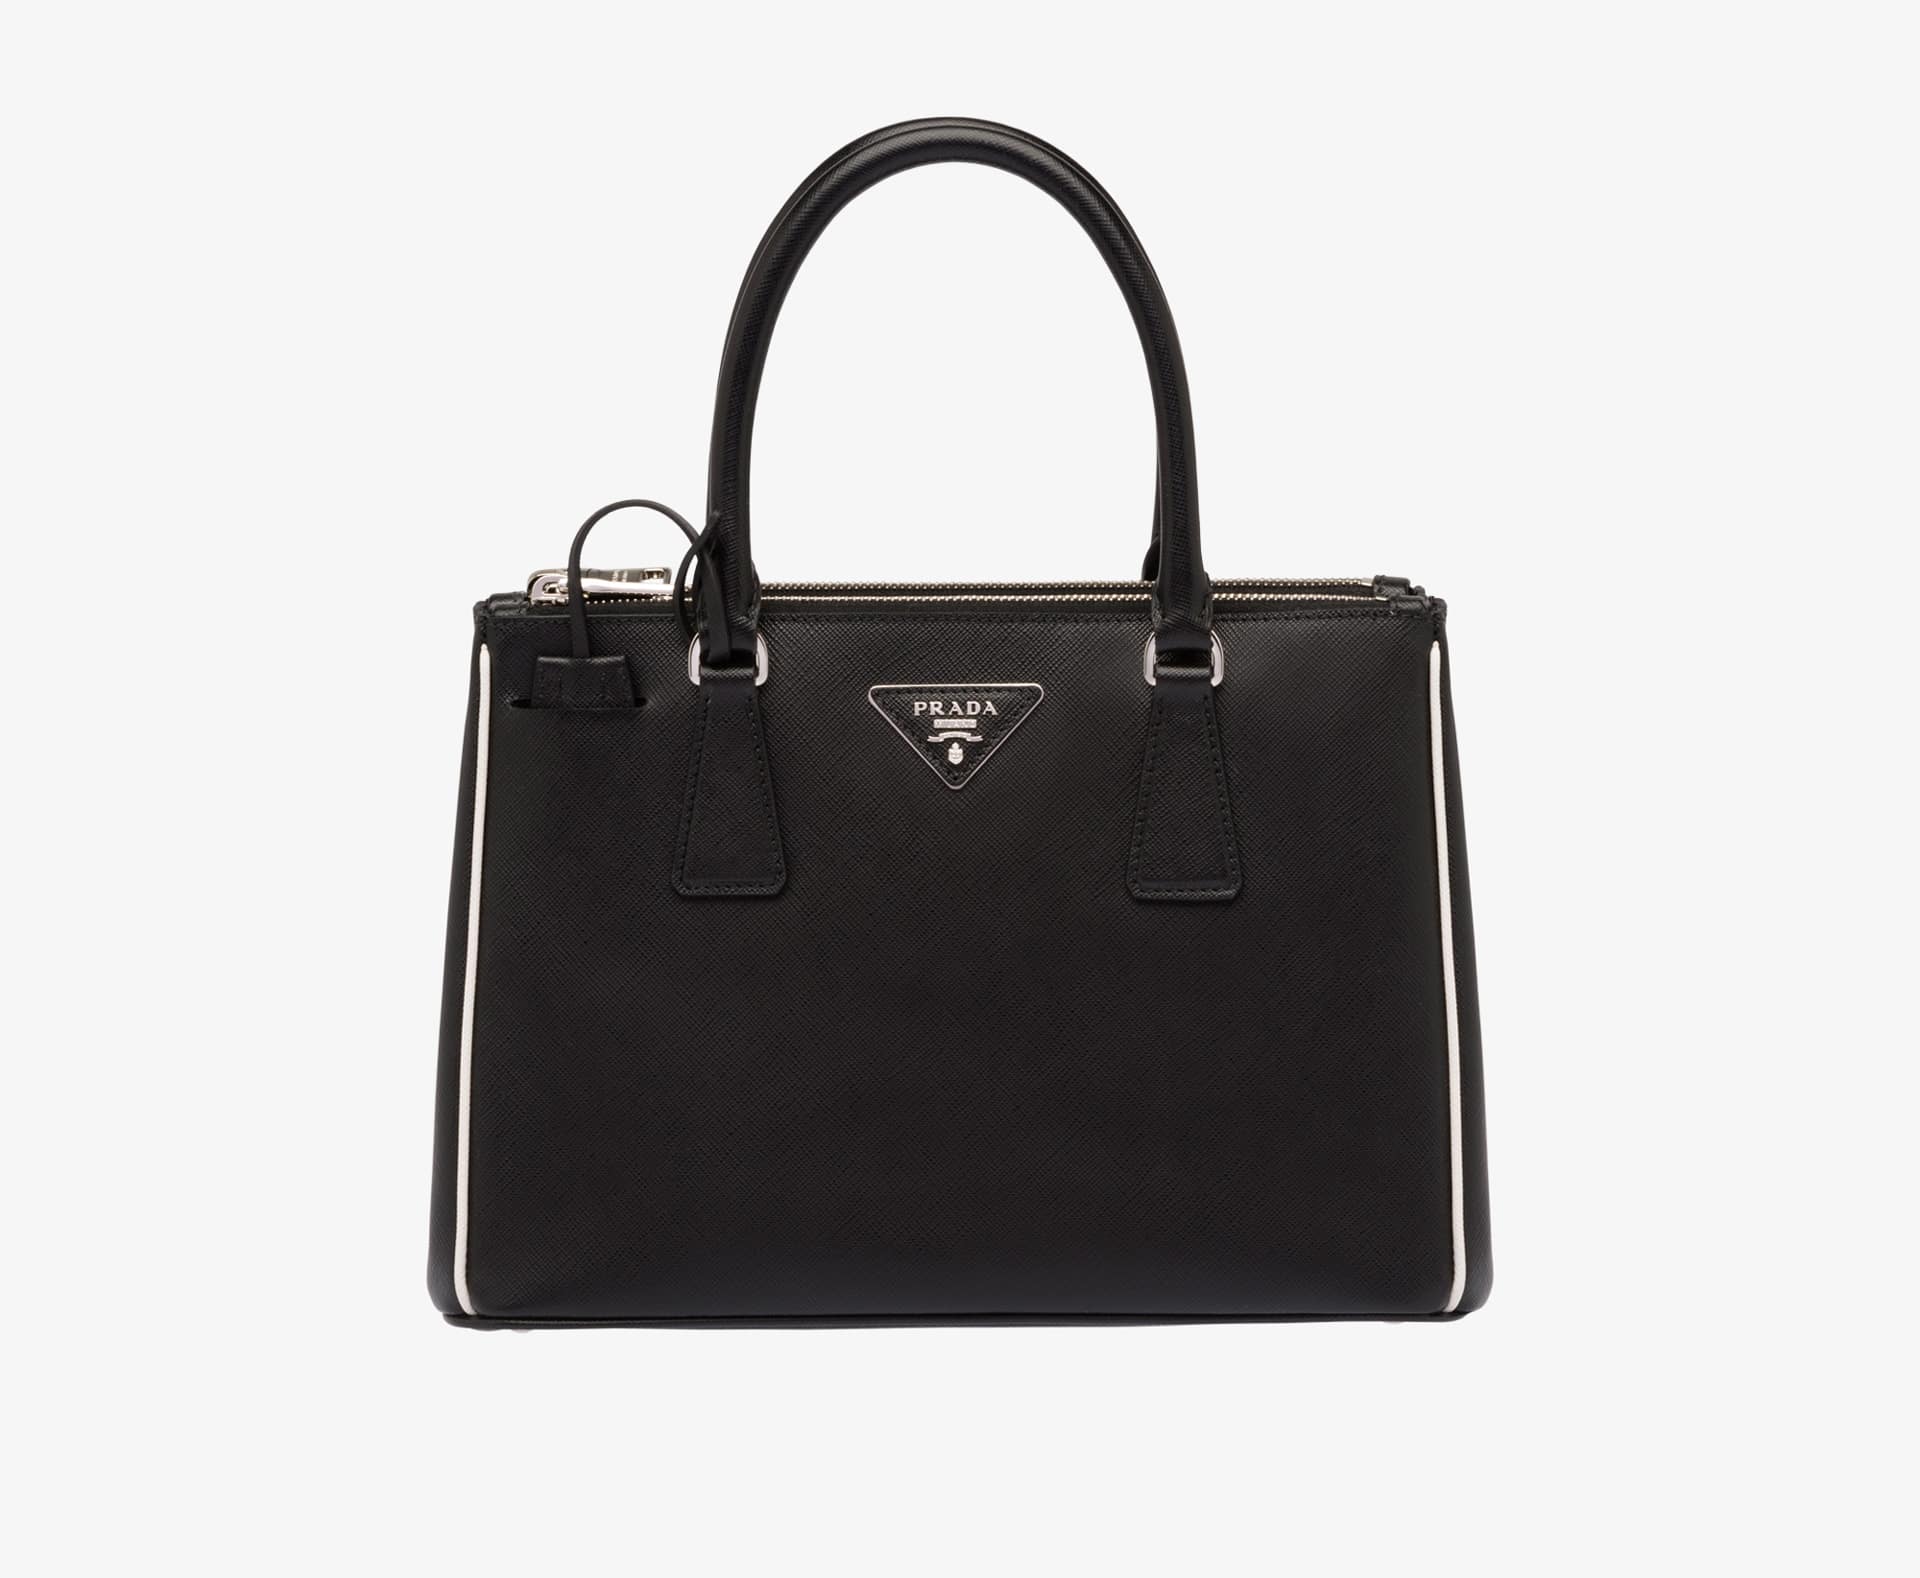 Prada Black/White Saffiano Leather Tote Bag